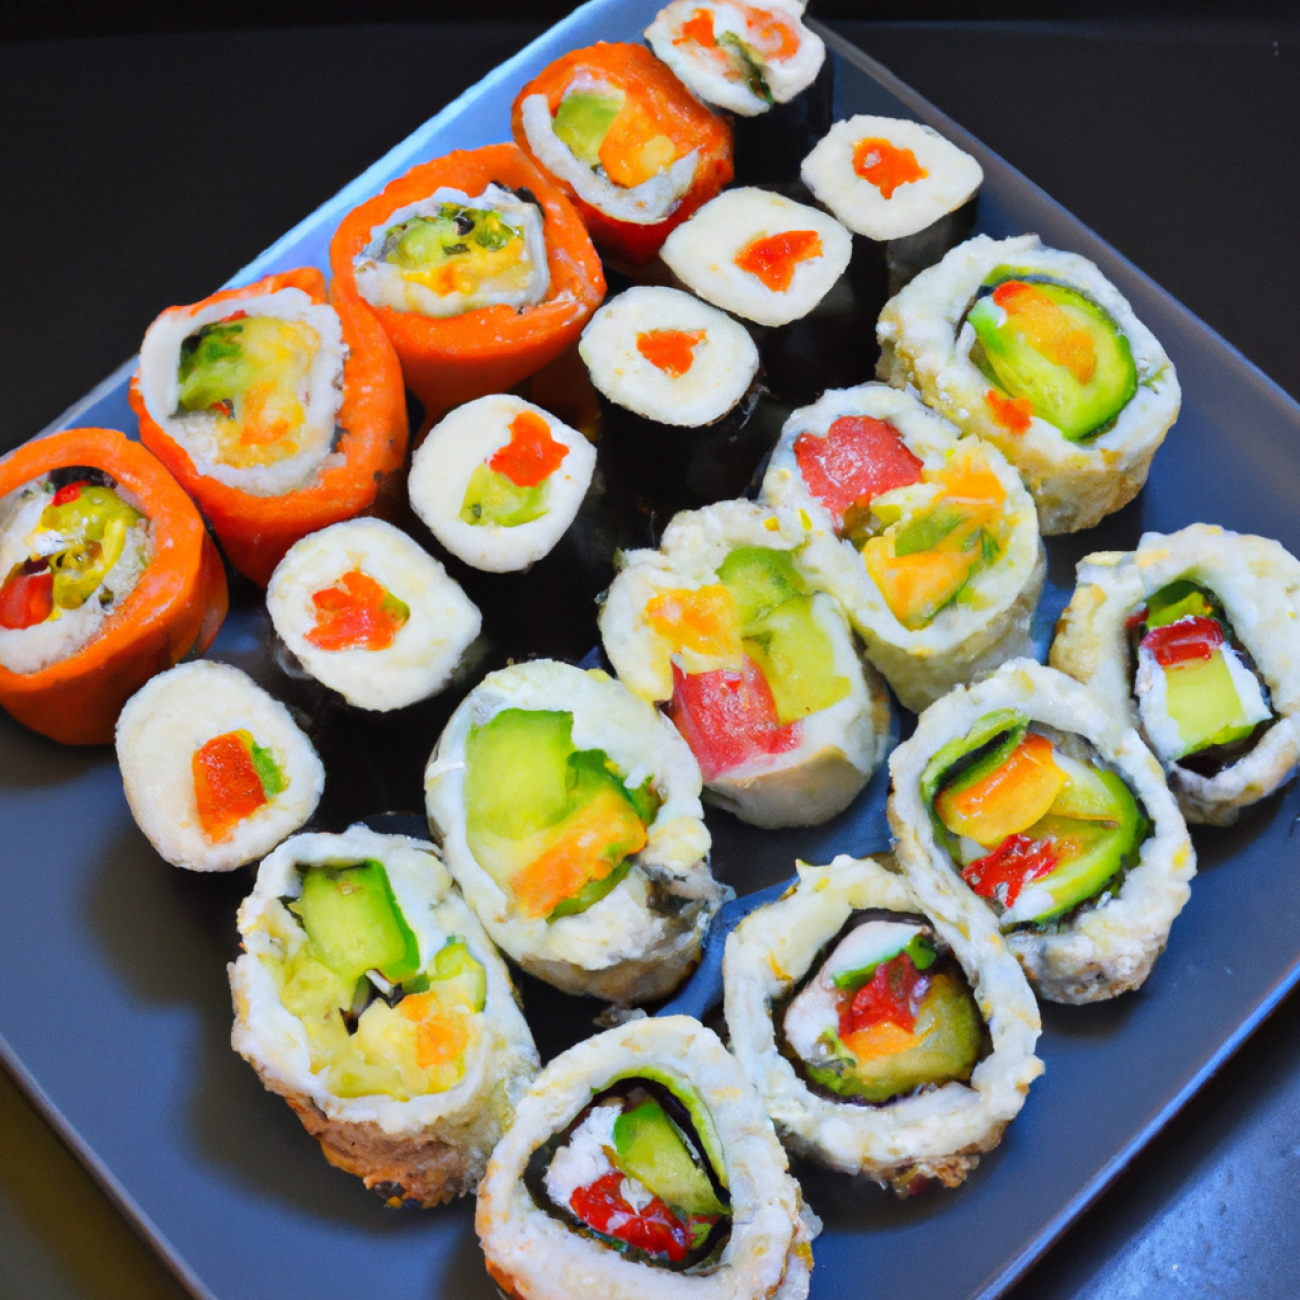 7. Sushi Bar Yasai ​-‍ Bio sushi s ohledem na udržitelnost‍ a skvělými chuťovými kombinacemi